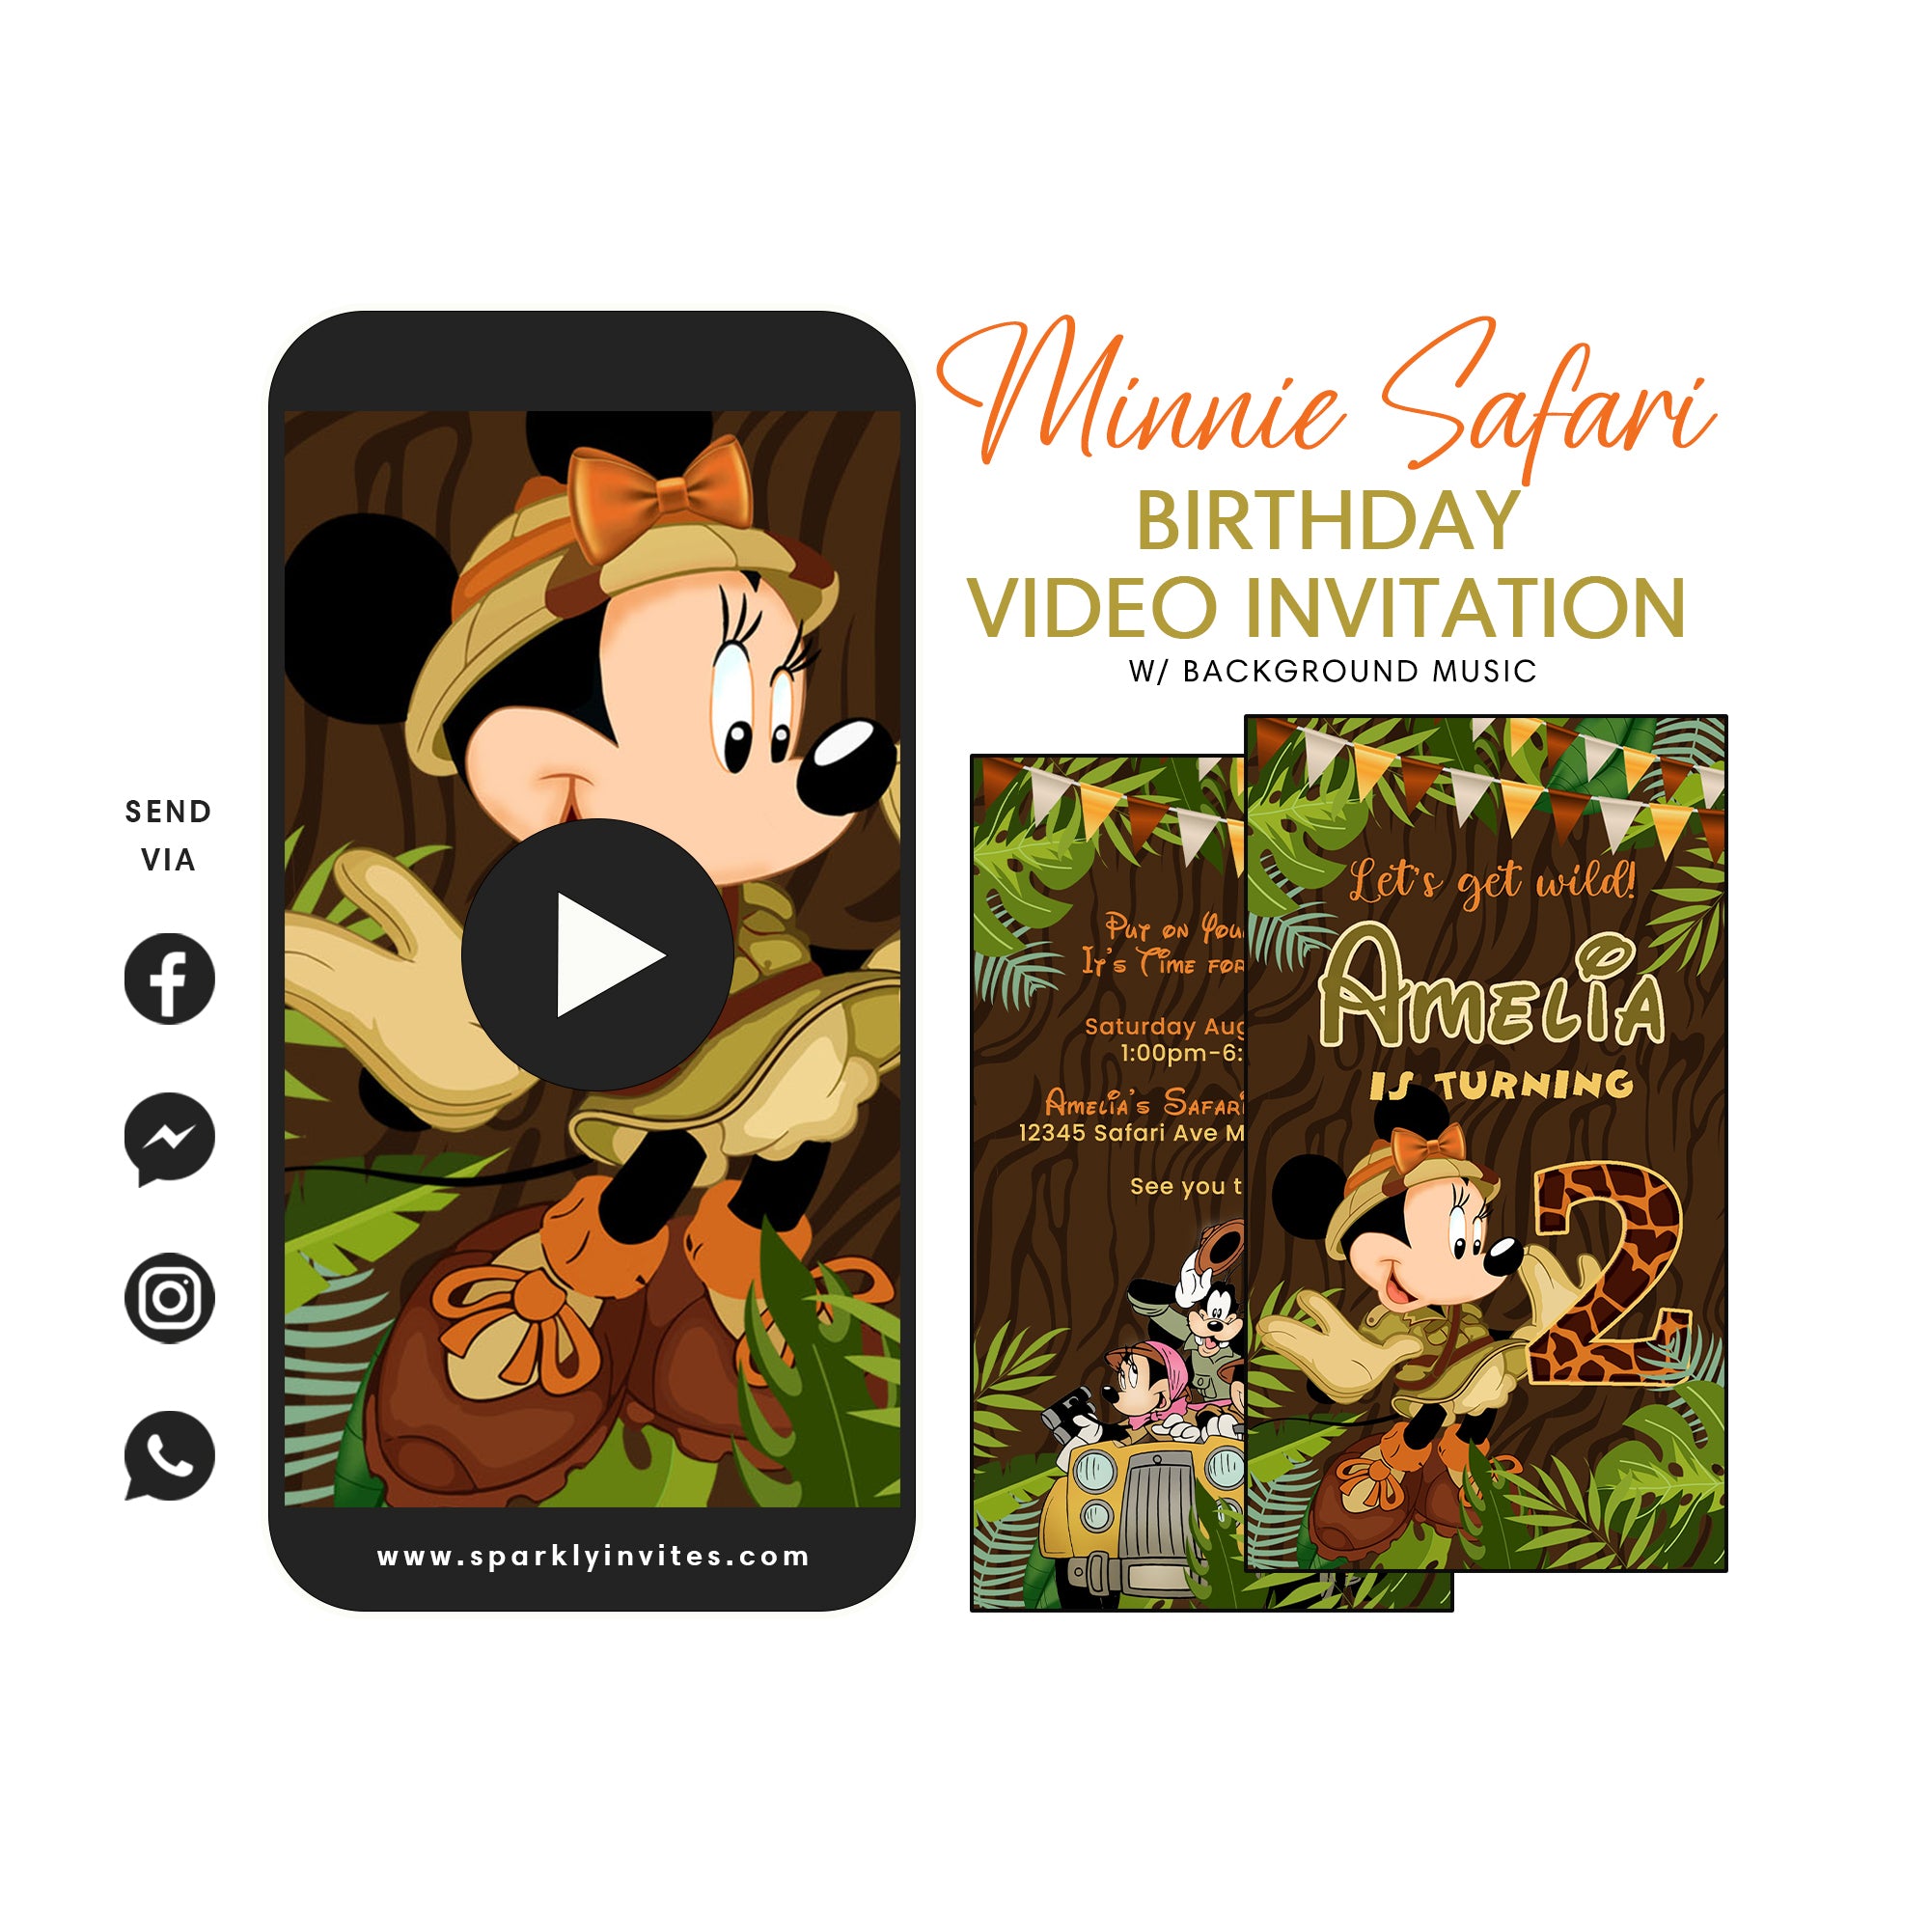 Minnie Safari Video Ibvitation